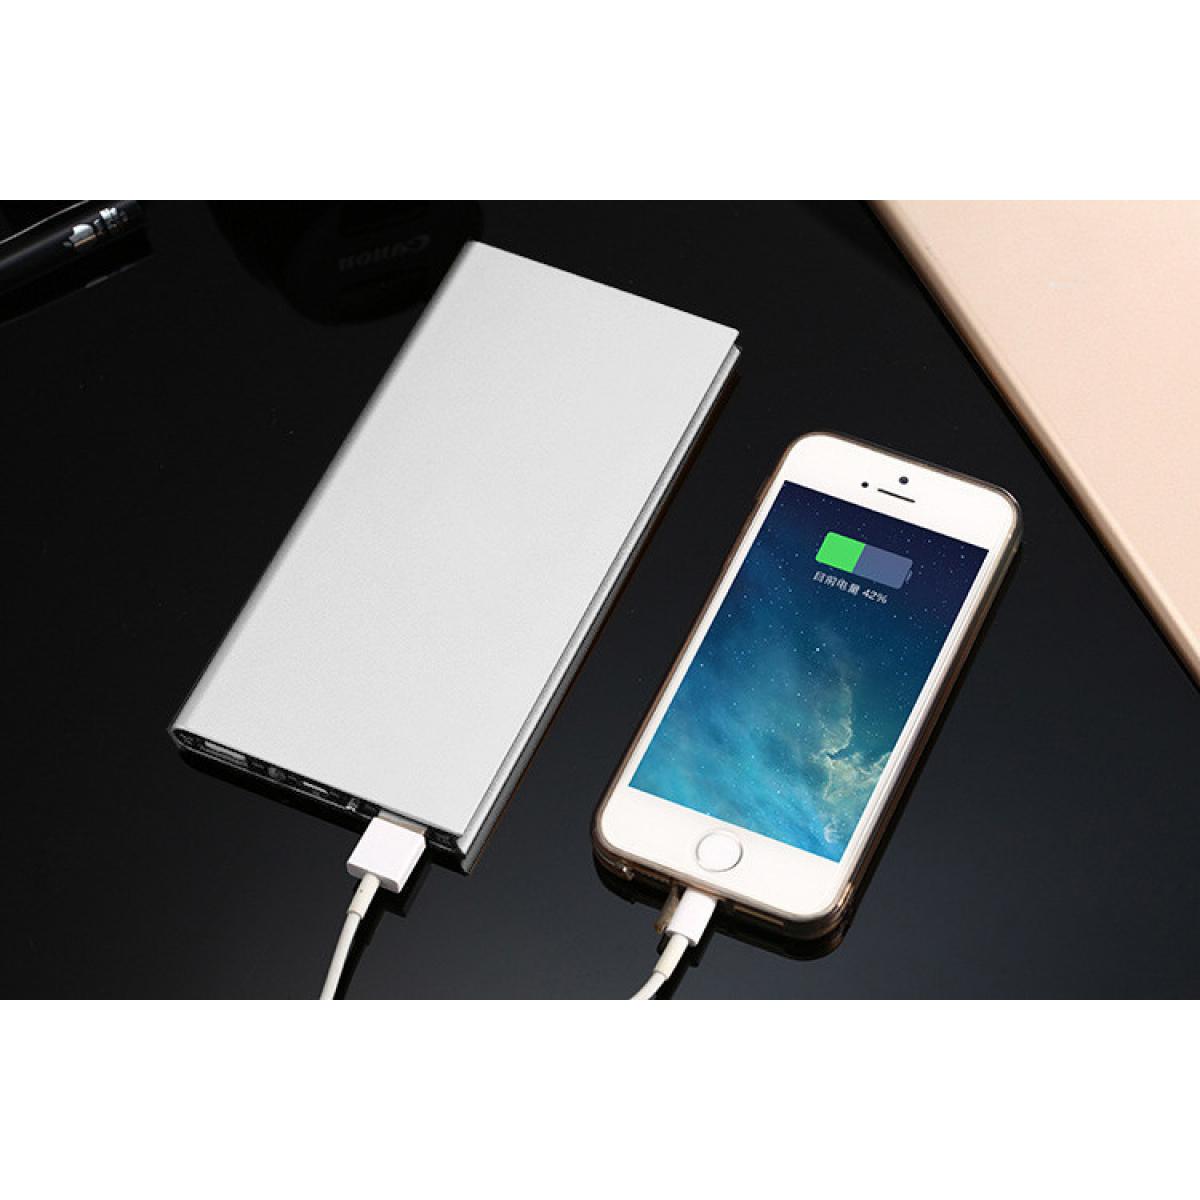 Shot - Batterie Externe Plate pour OPPO Find X Smartphone Tablette Chargeur Power Bank 6000mAh 2 Port USB (ARGENT) - Chargeur secteur téléphone